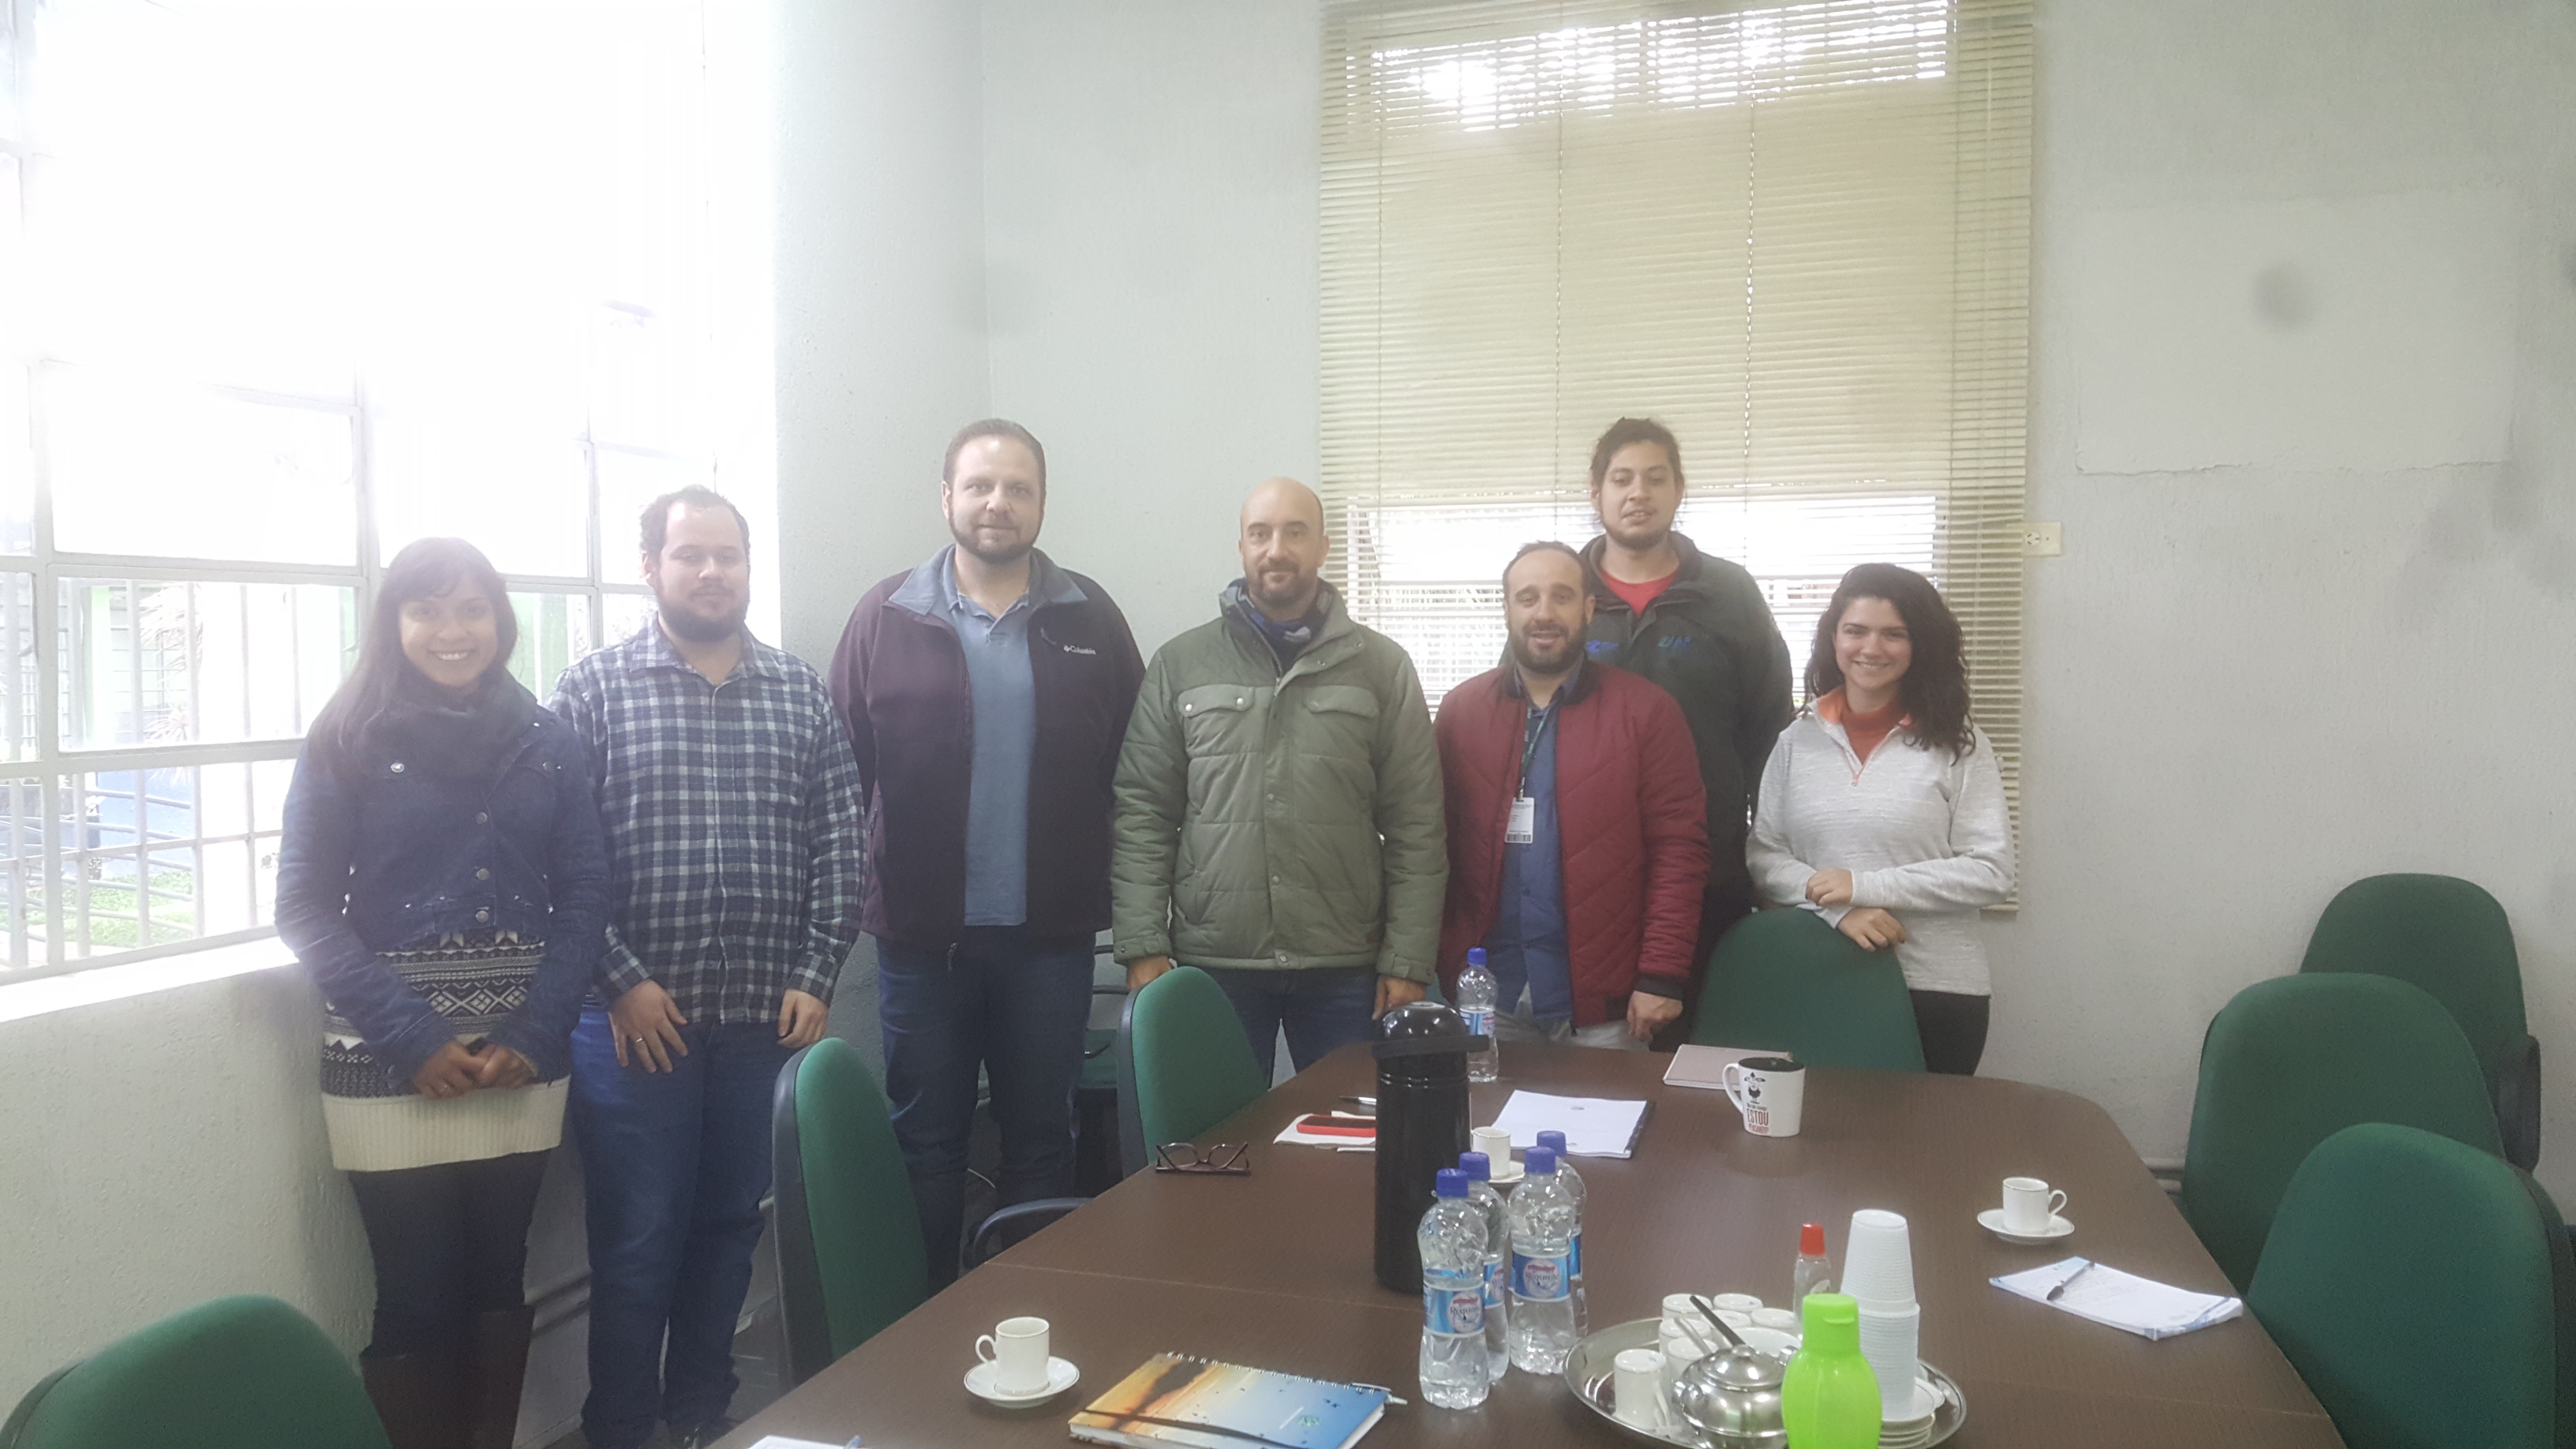 Reunião com membros da equipe do IAP (Instituto Ambiental do Paraná) para entrega do relatório técnico "Distribuição e conservação de anfíbios microendêmicos do sul do Brasil"